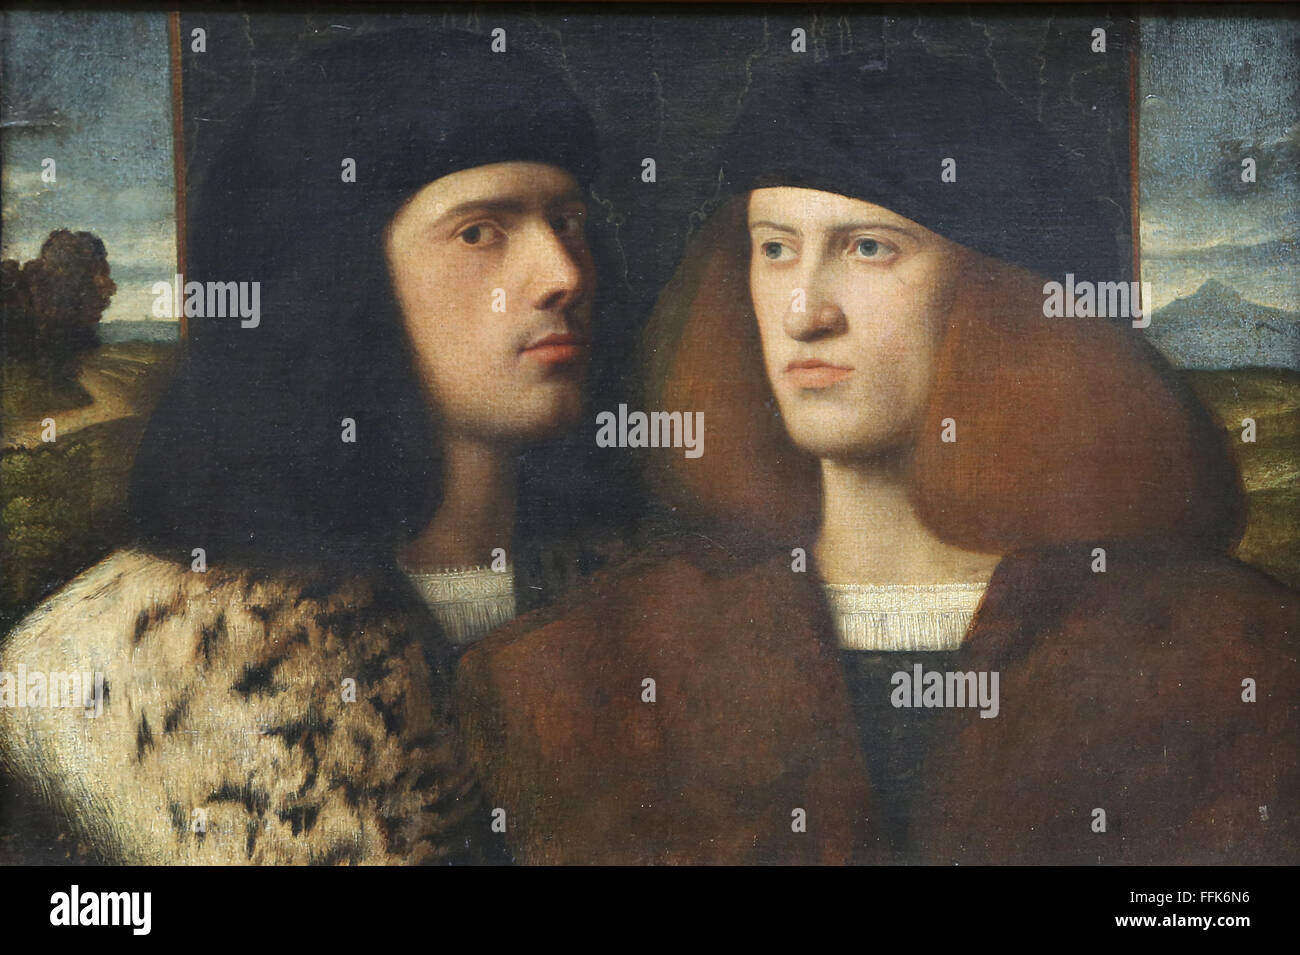 Porträt von zwei jungen Männern. 16. Jahrhundert. Renaissance. Unbekannter Künstler. Louvre-Museum. Paris. Frankreich. Stockfoto